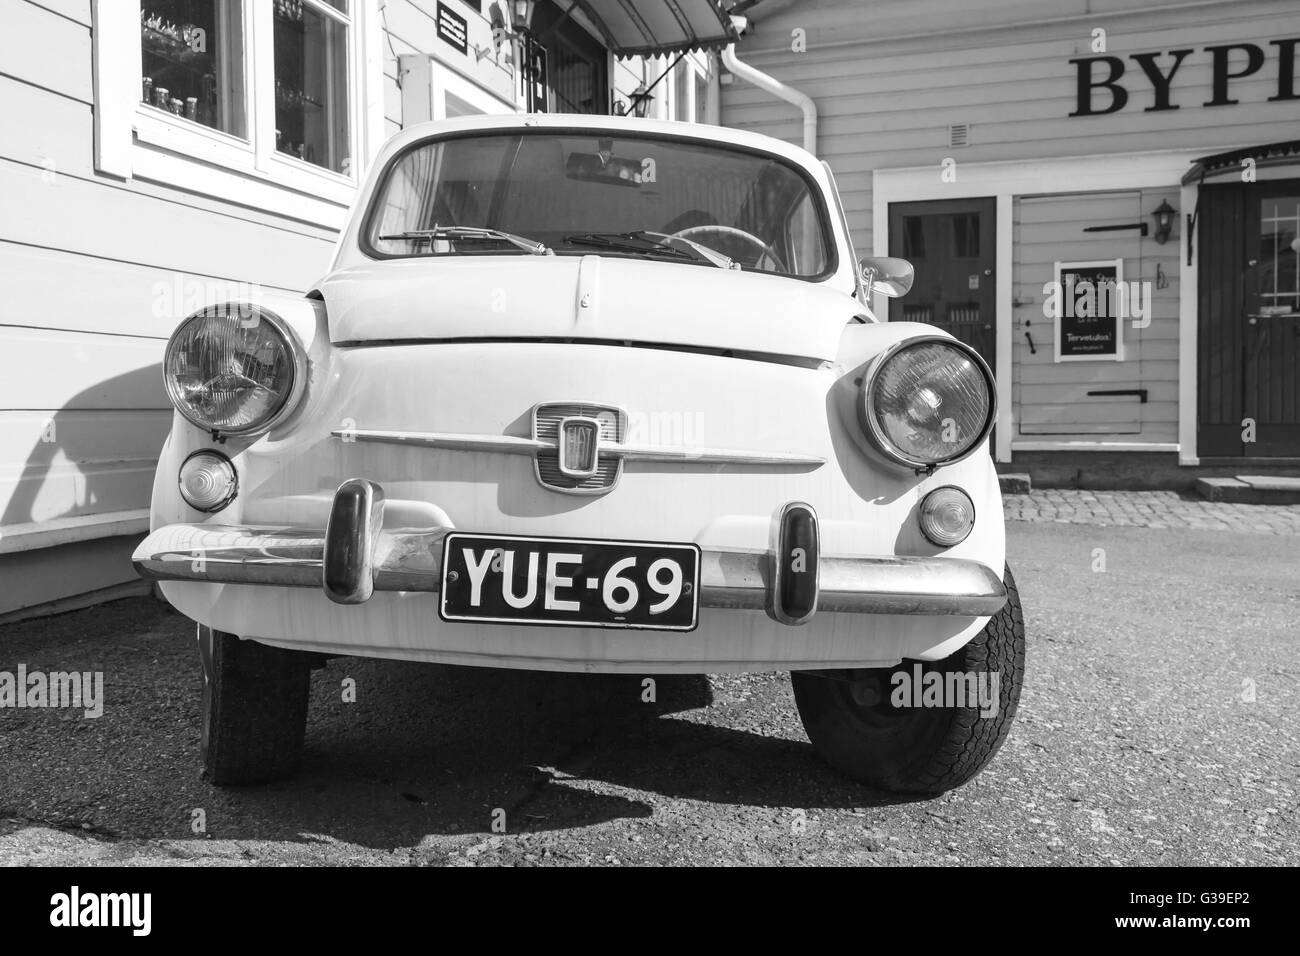 Porvoo, Finlandia - 7 Maggio 2016: Vecchia Fiat 600 city car prodotta dal costruttore italiano Fiat dal 1955 al 1969, close-up foto Foto Stock